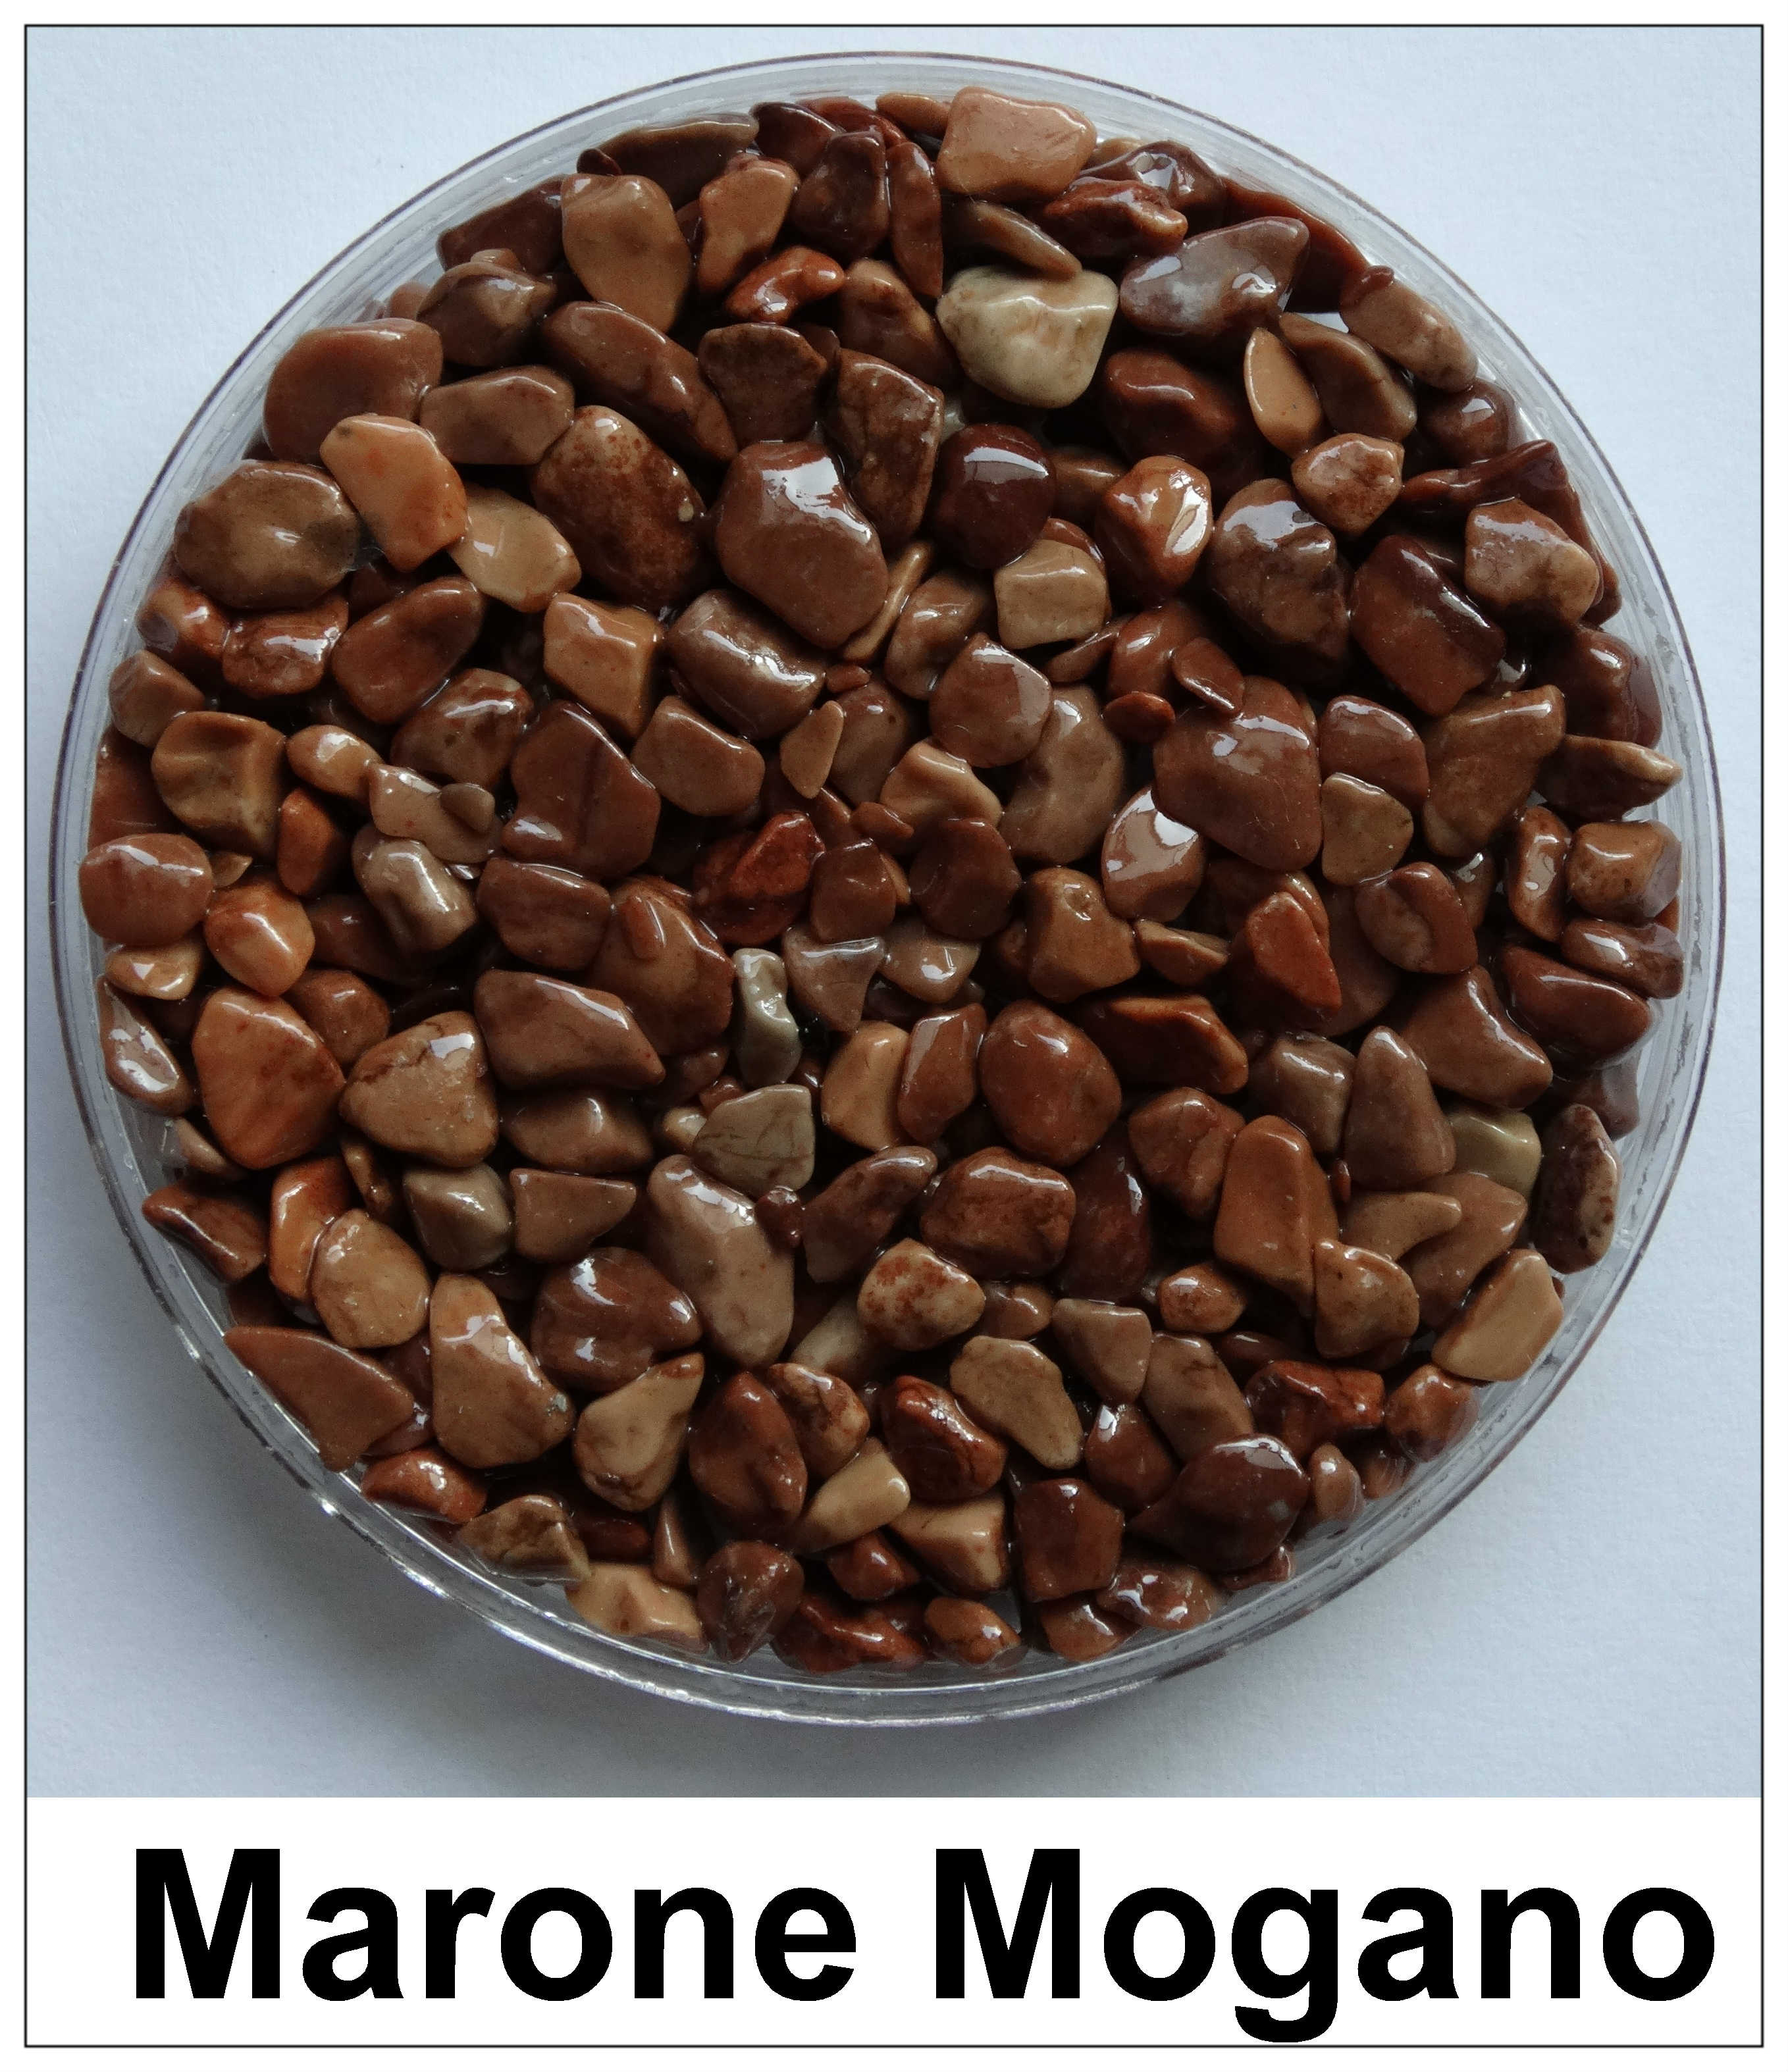 Marone Mogan